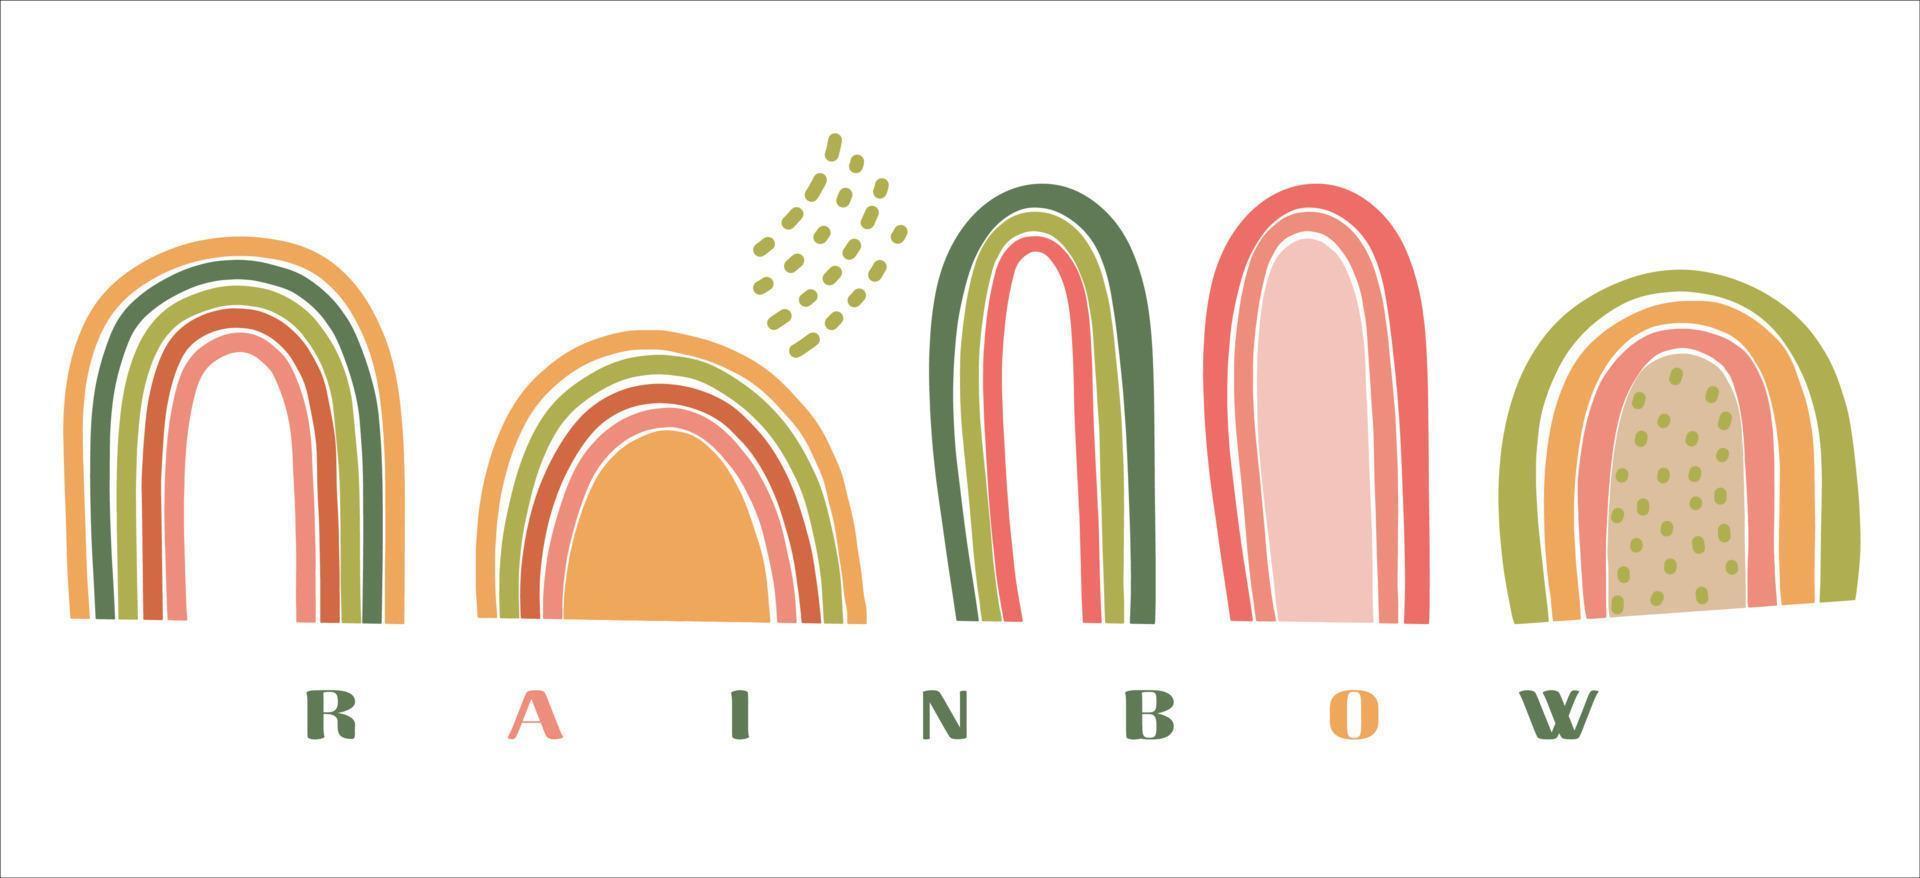 arco iris abstracto colorido en estilo moderno. conjunto de elementos diseño de ilustración vectorial diseño abstracto de arte contemporáneo. diseño de plantilla vector